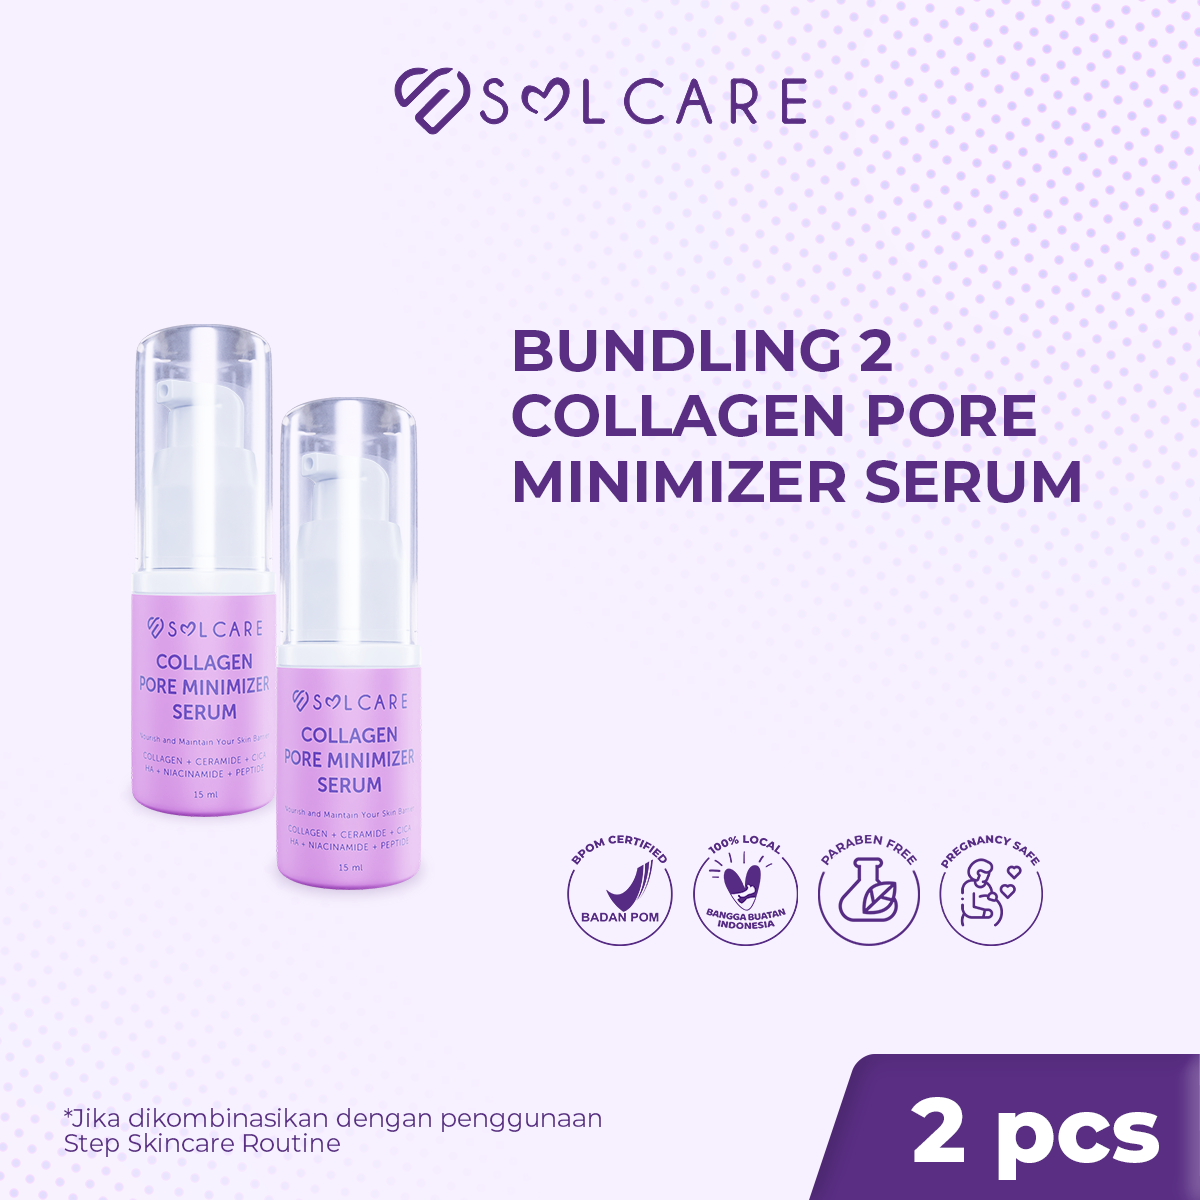 Collagen Pore Minimizer Serum